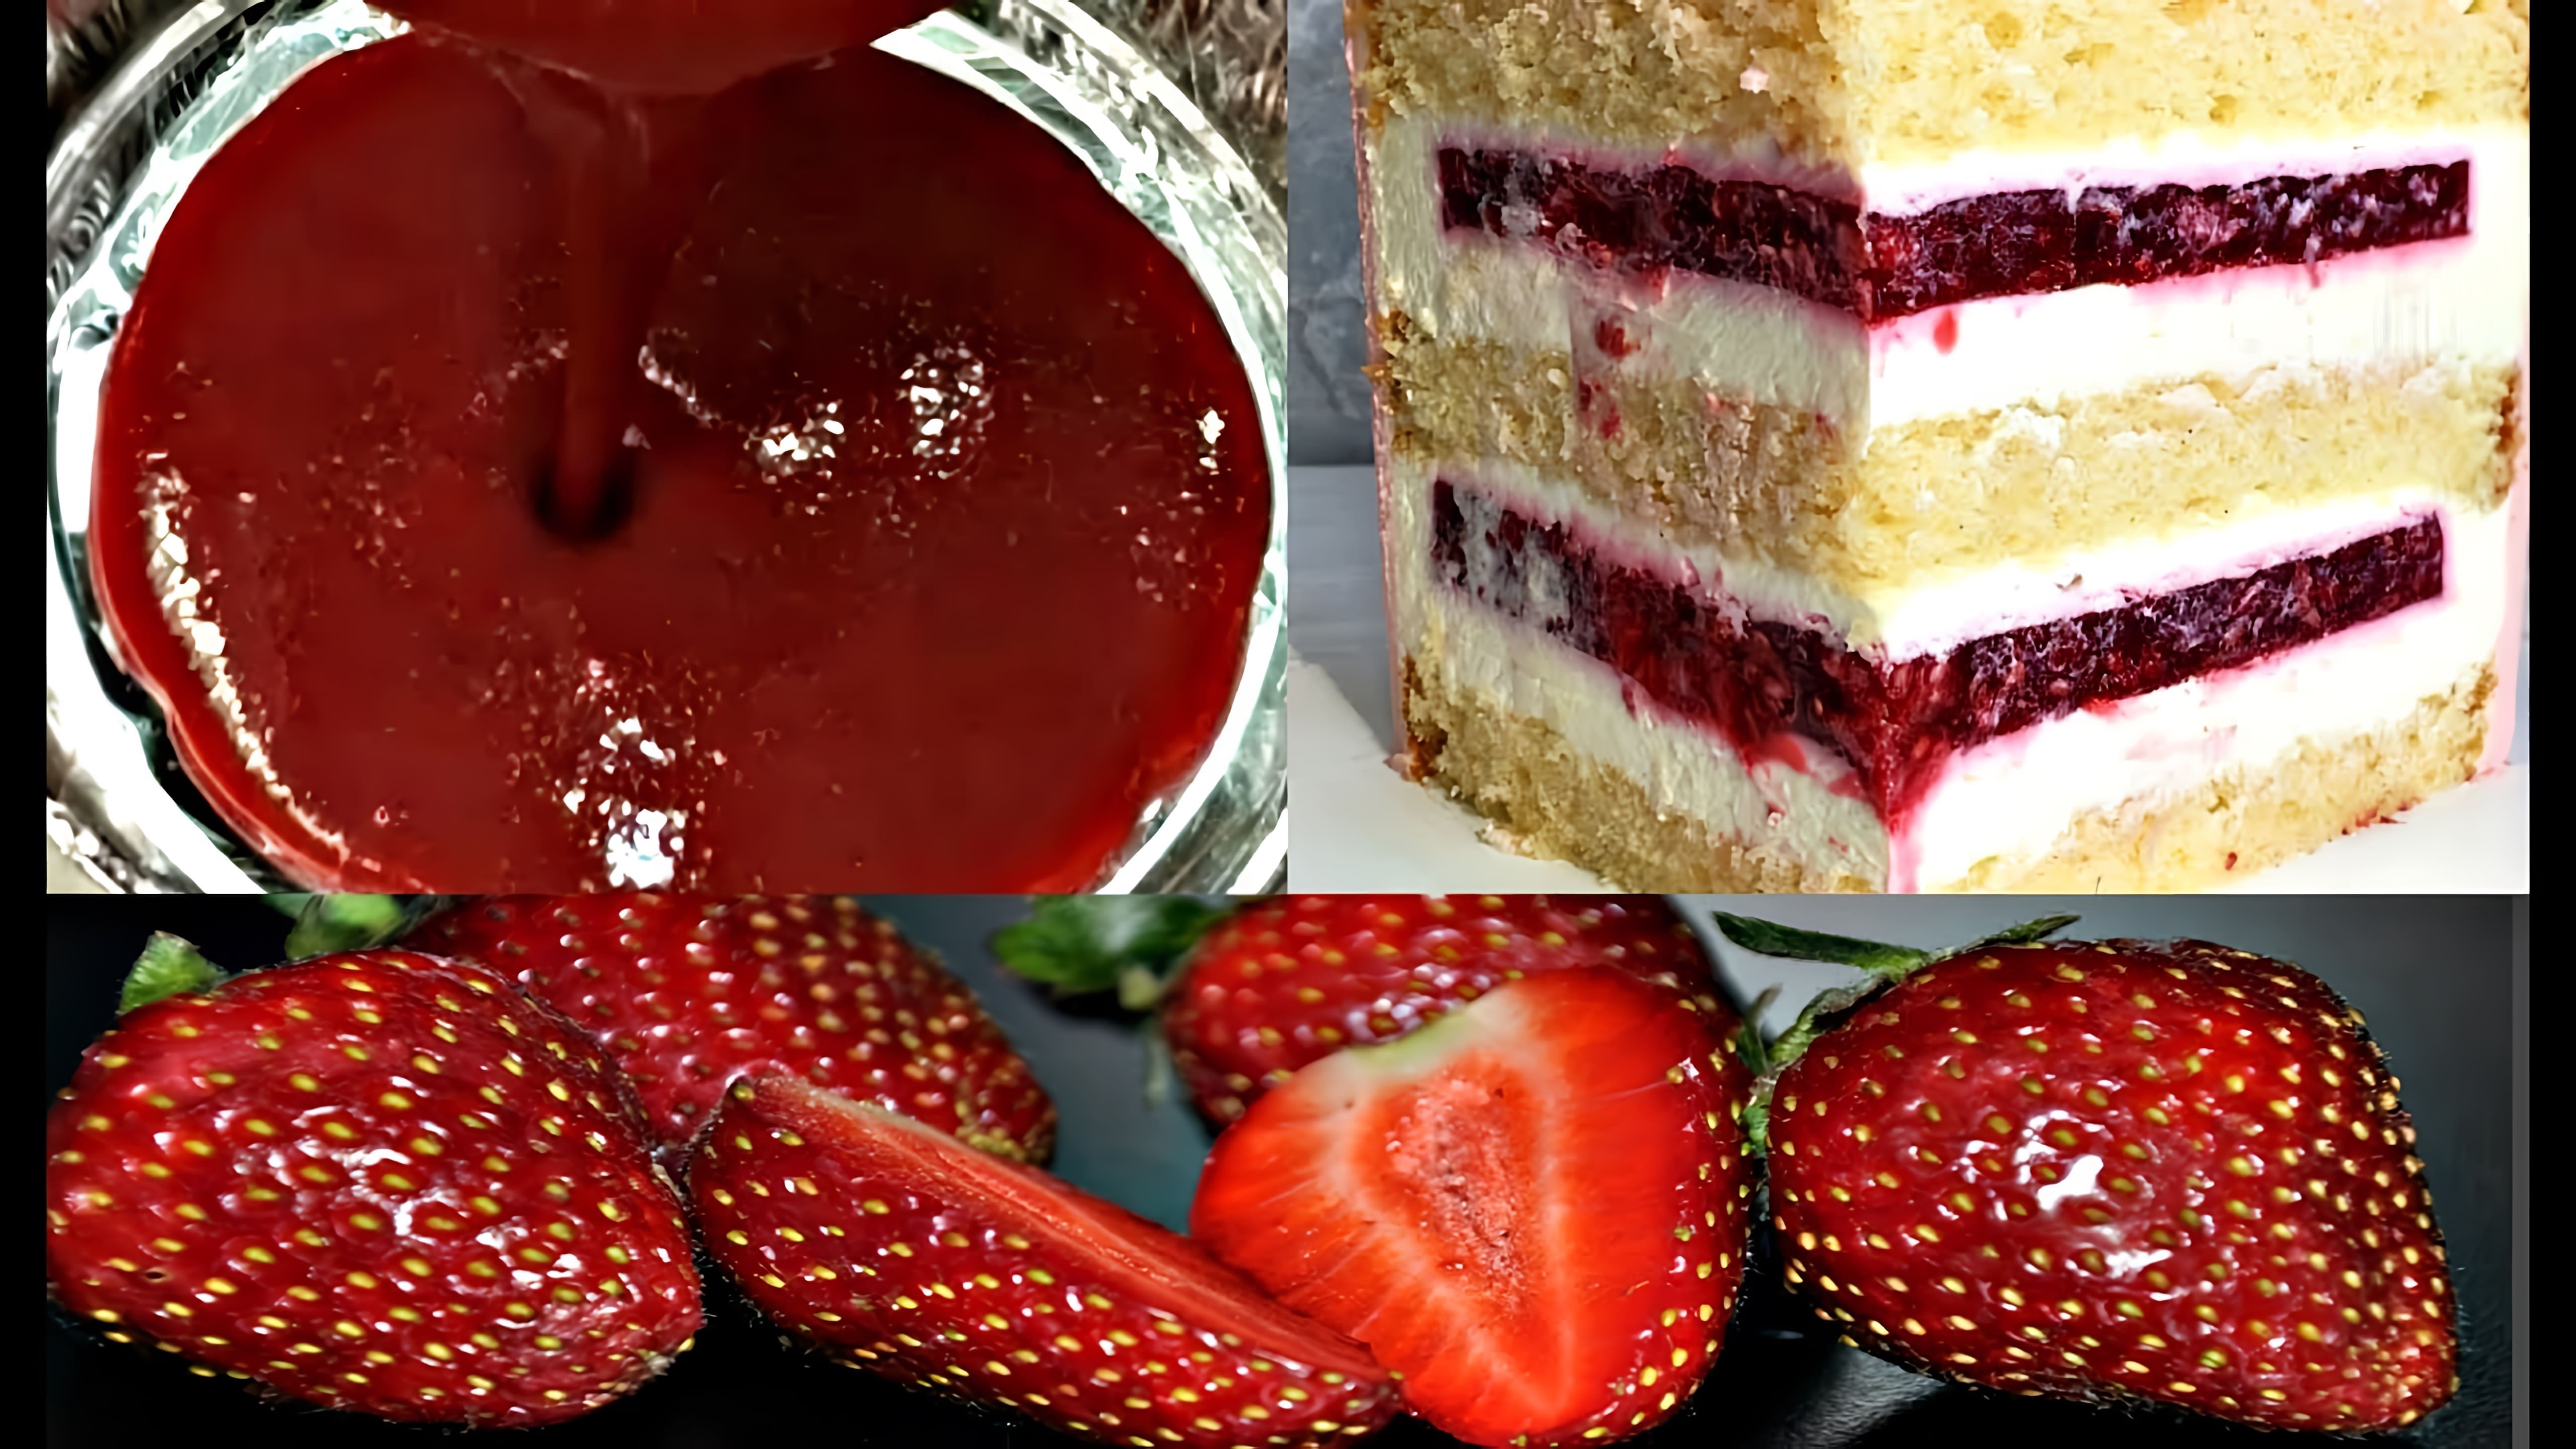 В этом видео демонстрируется процесс приготовления клубничного конфи для прослойки торта